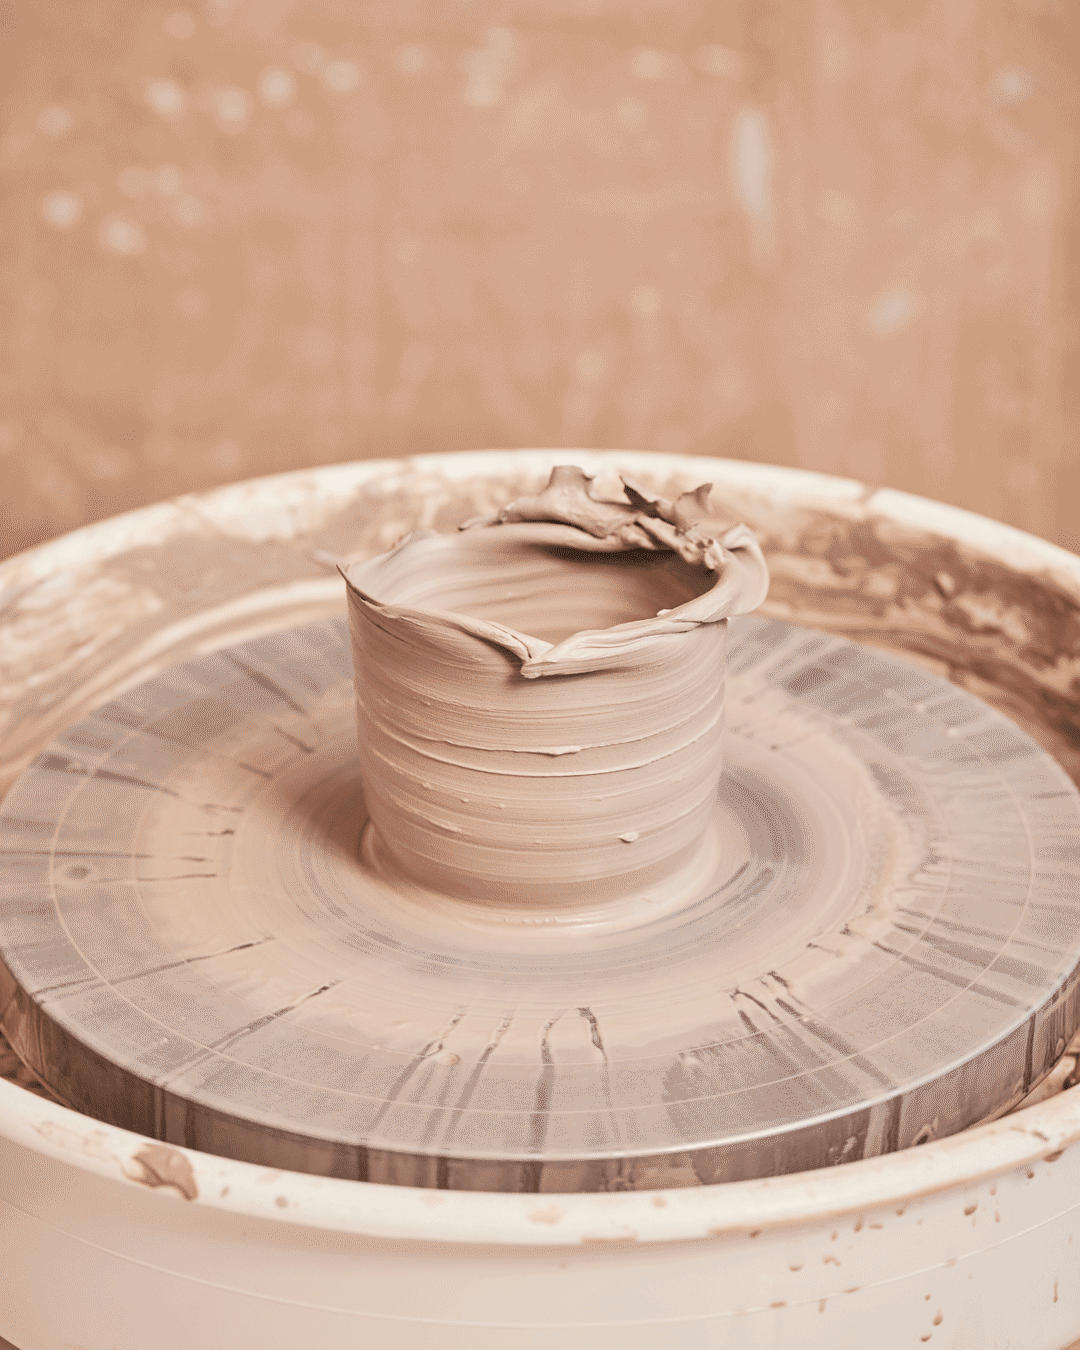 Cours d'initiation à la poterie